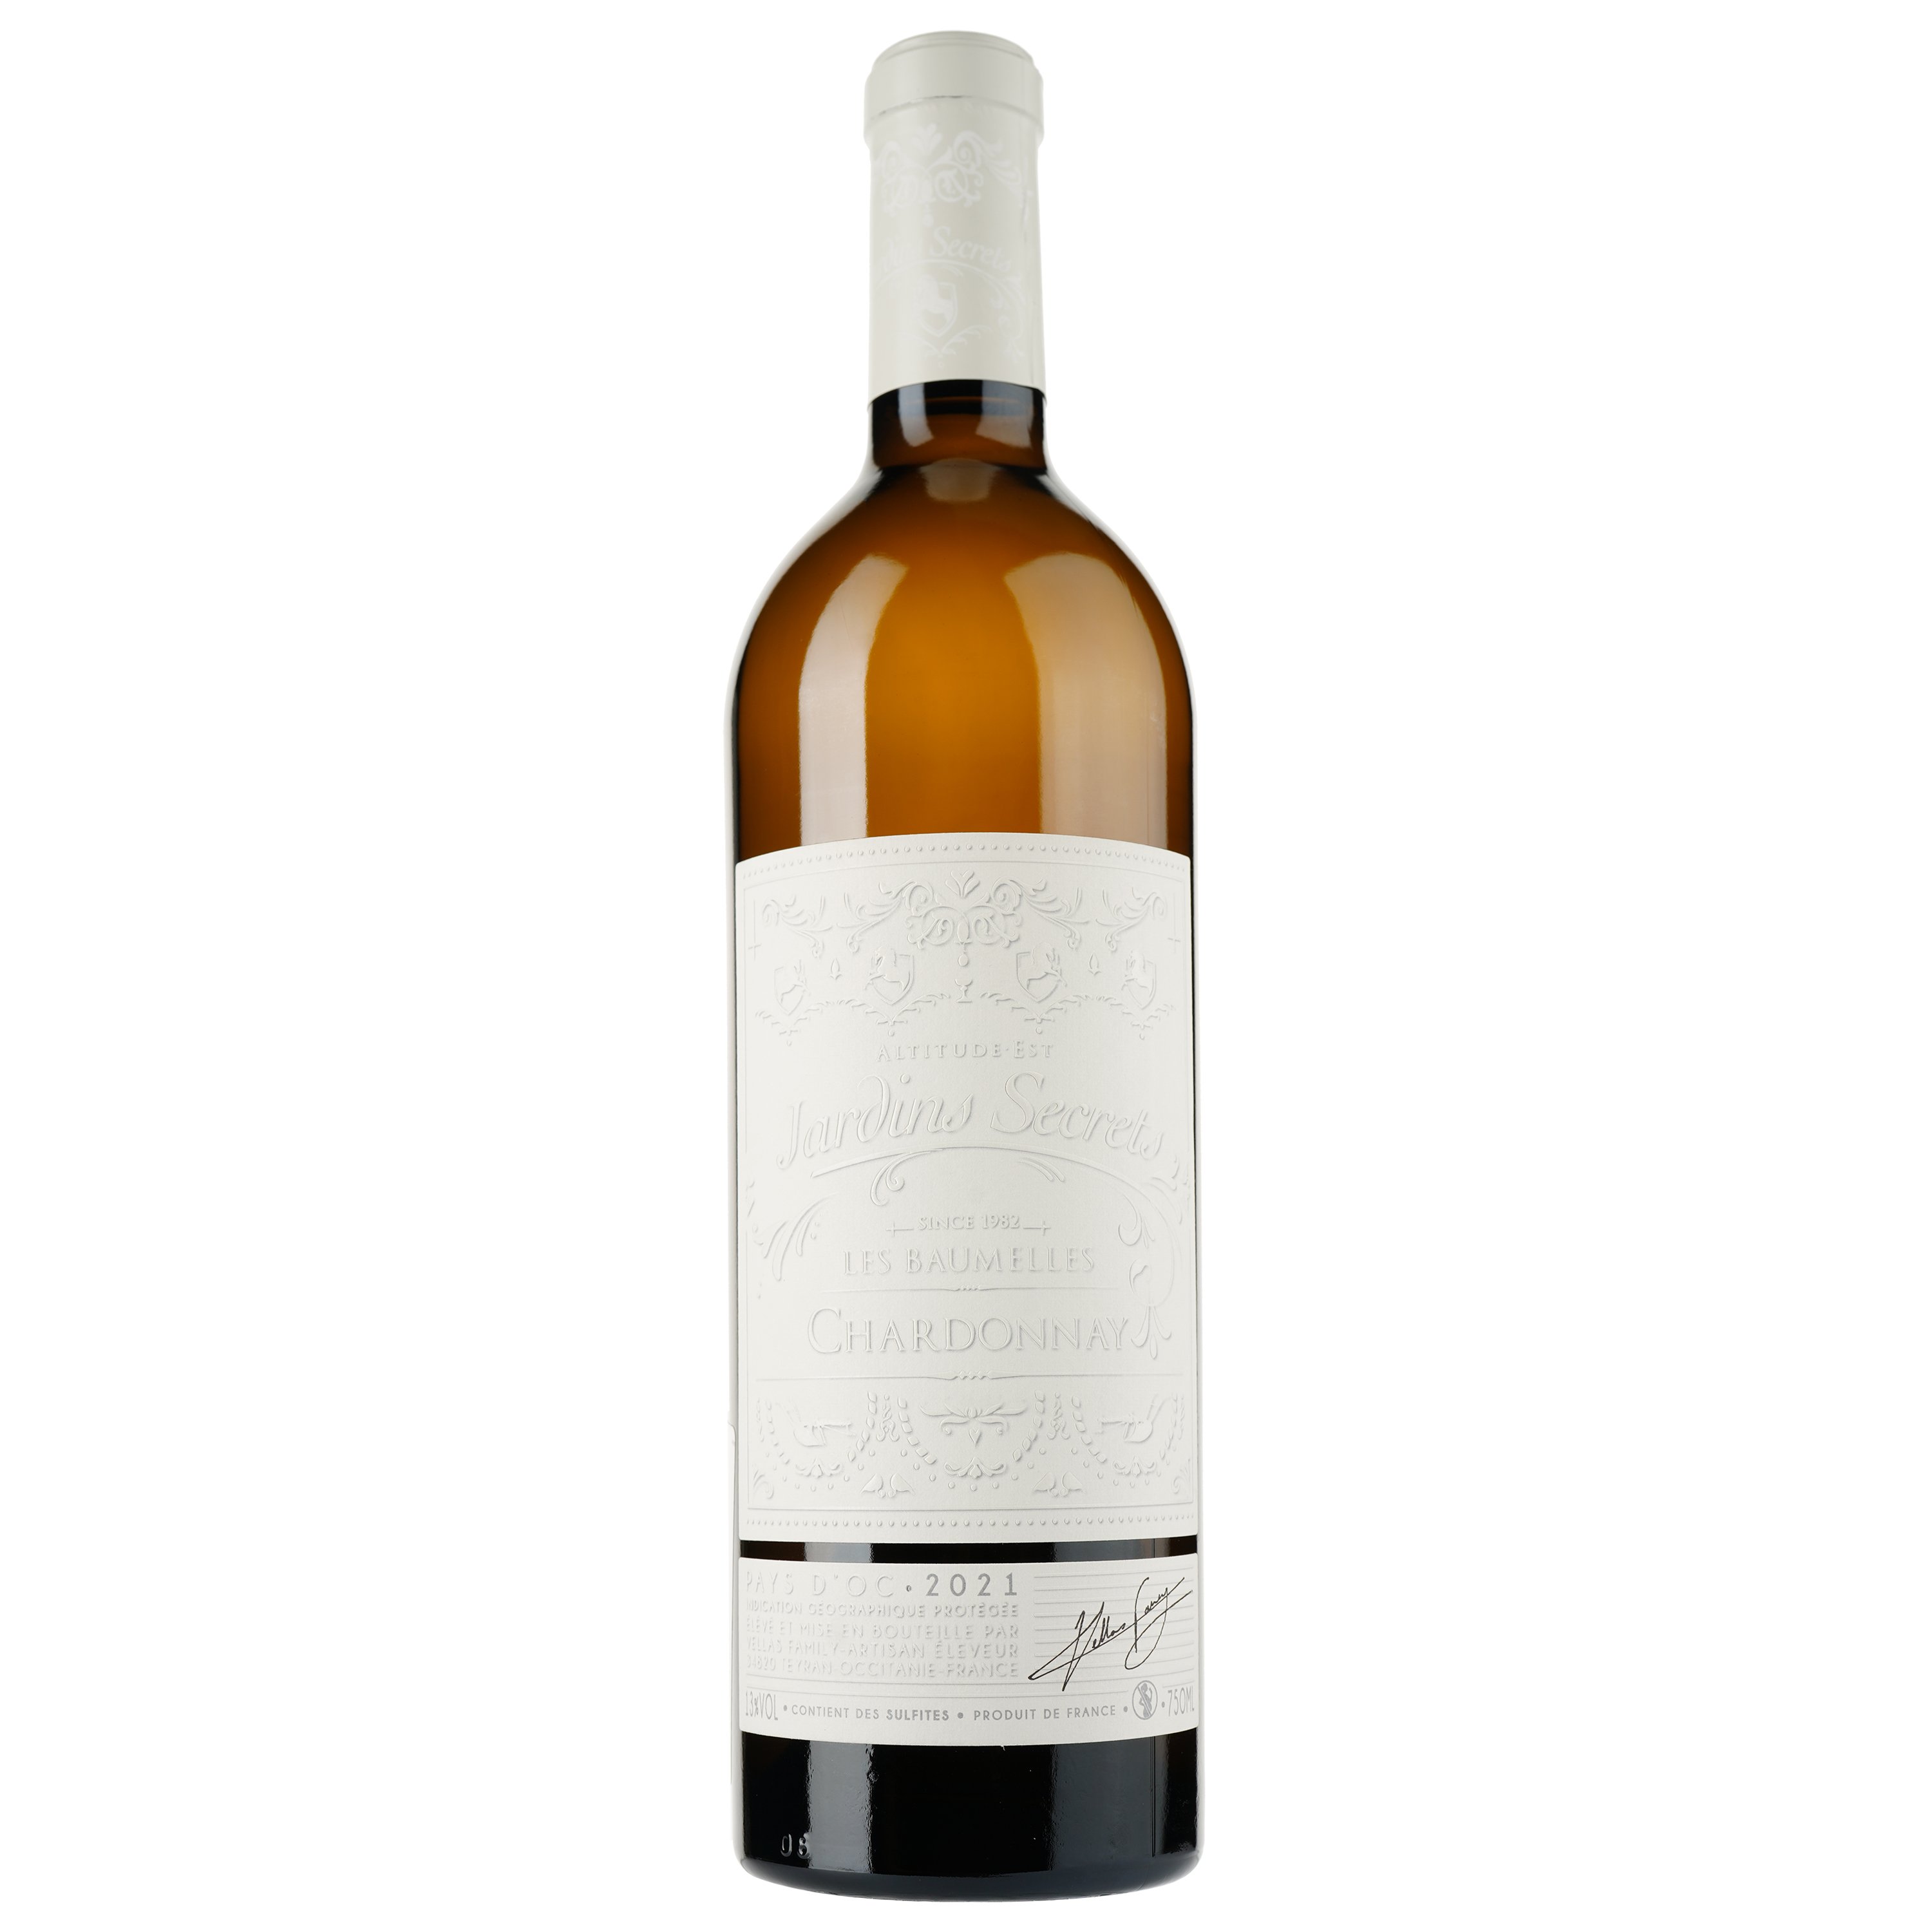 Вино Jardins Secrets Chardonnay 2021 IGP Pays D'Oc, белое, сухое, 0,75 л - фото 1